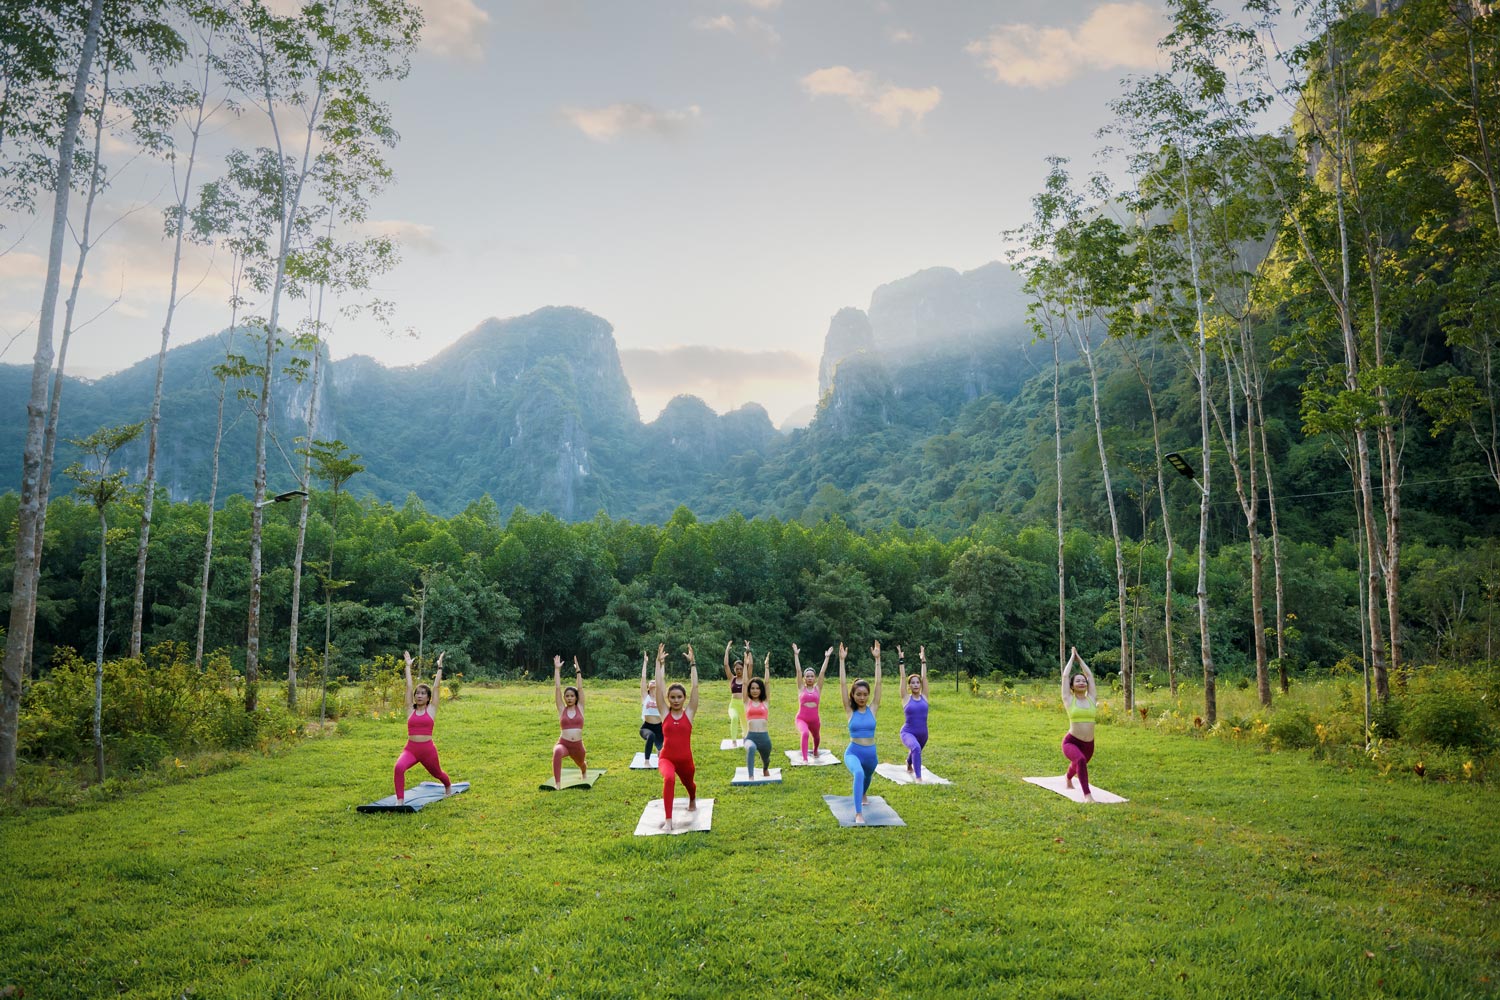 Yoga hiện đang là một hoạt động du lịch Wellness được quan tâm.